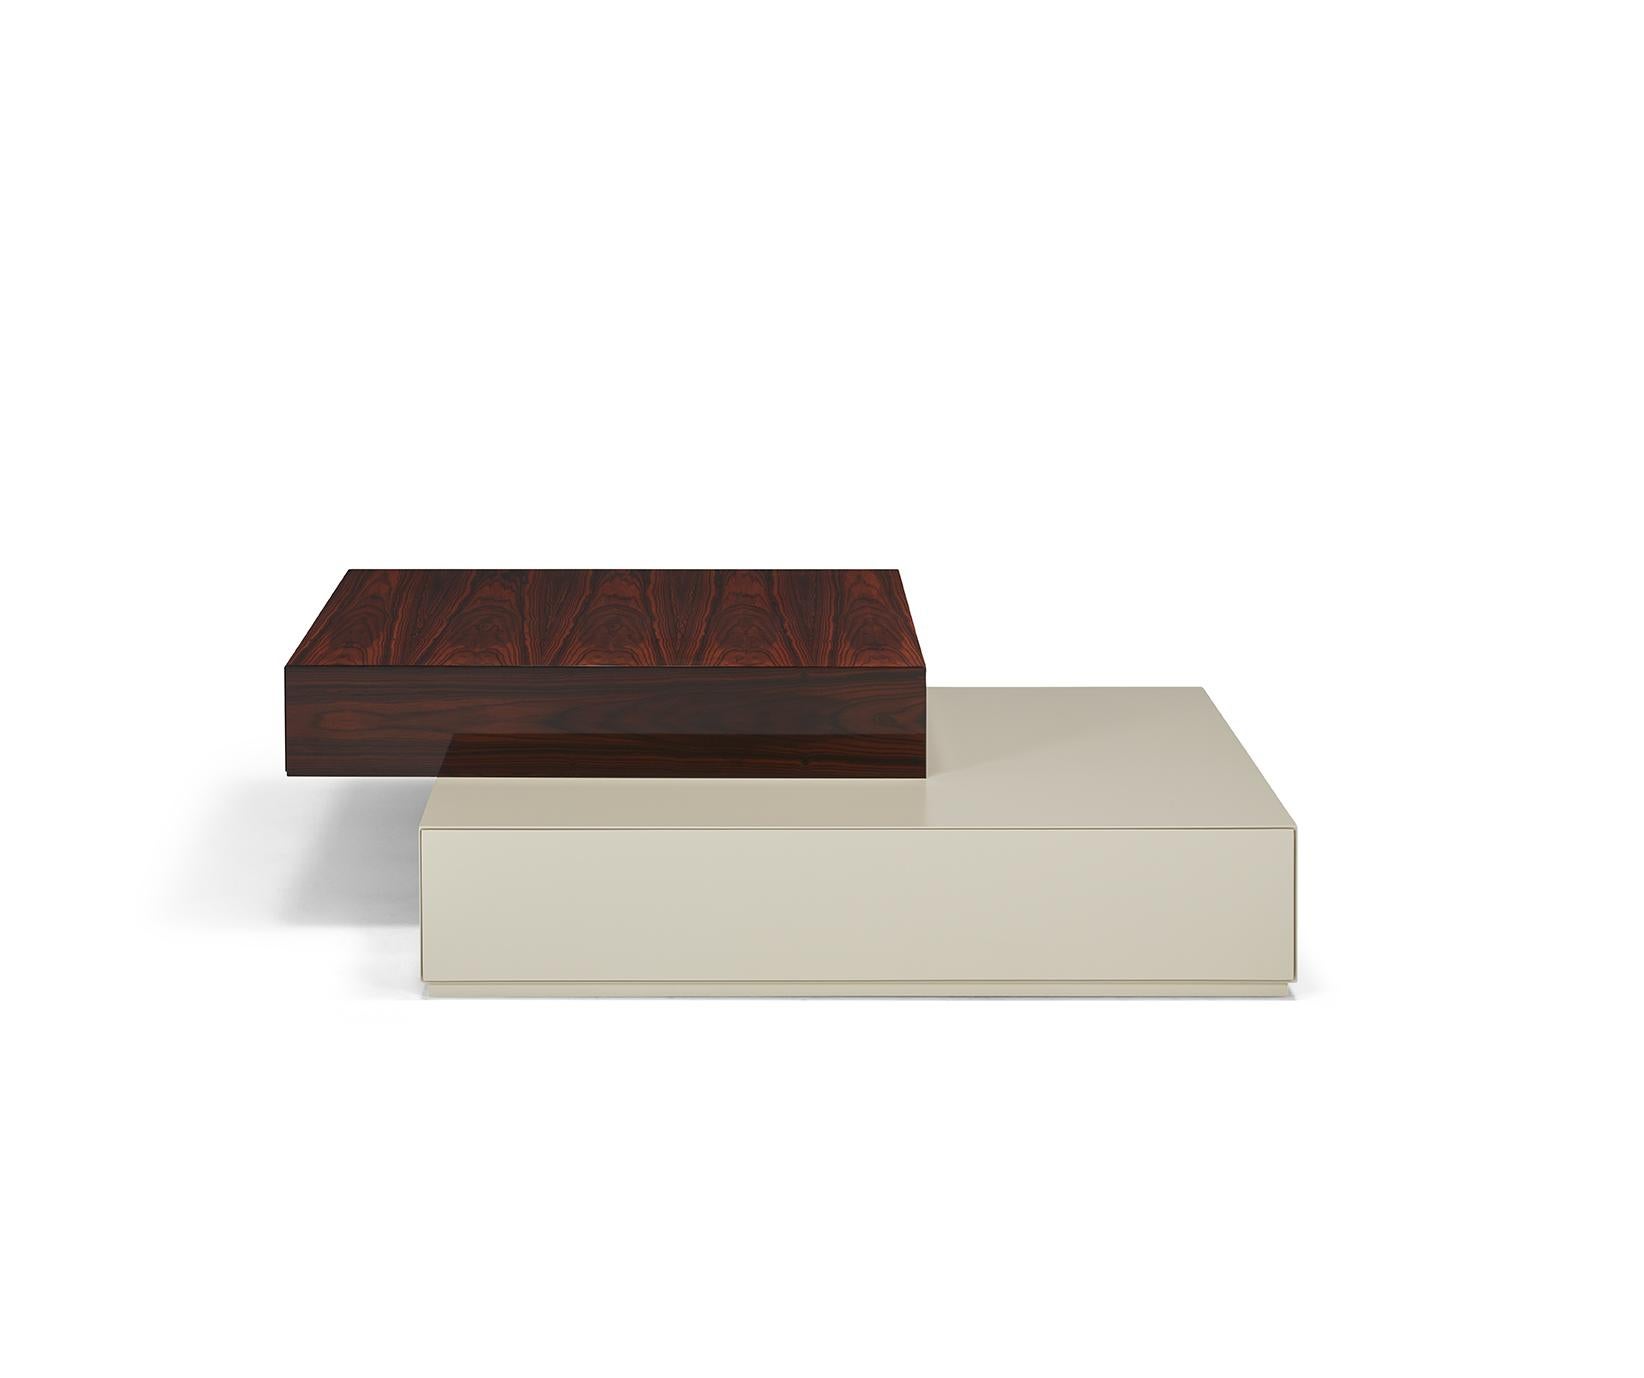 La table basse Dickens, avec ses deux tiroirs superposés, est fabriquée en bois laqué et plaqué, mais permet de multiples combinaisons de finitions pour répondre à tous les besoins en matière de design ?

Illustré avec le tiroir supérieur en